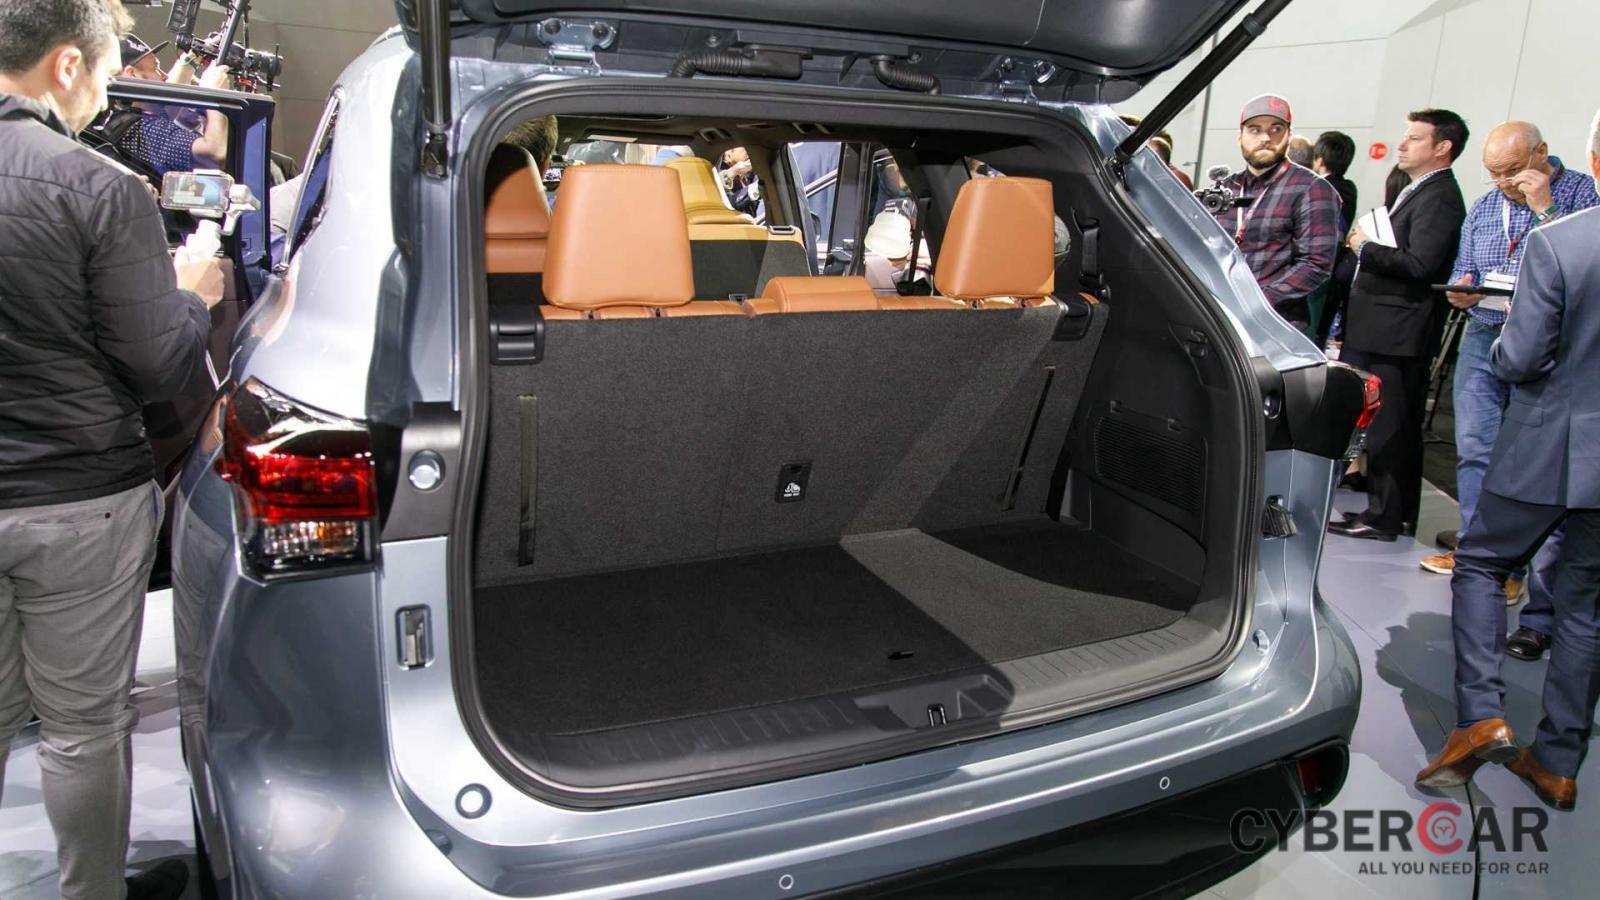 Khoang hành lý của Toyota Highlander 2020 khi 2 hàng ghế sau gập xuống